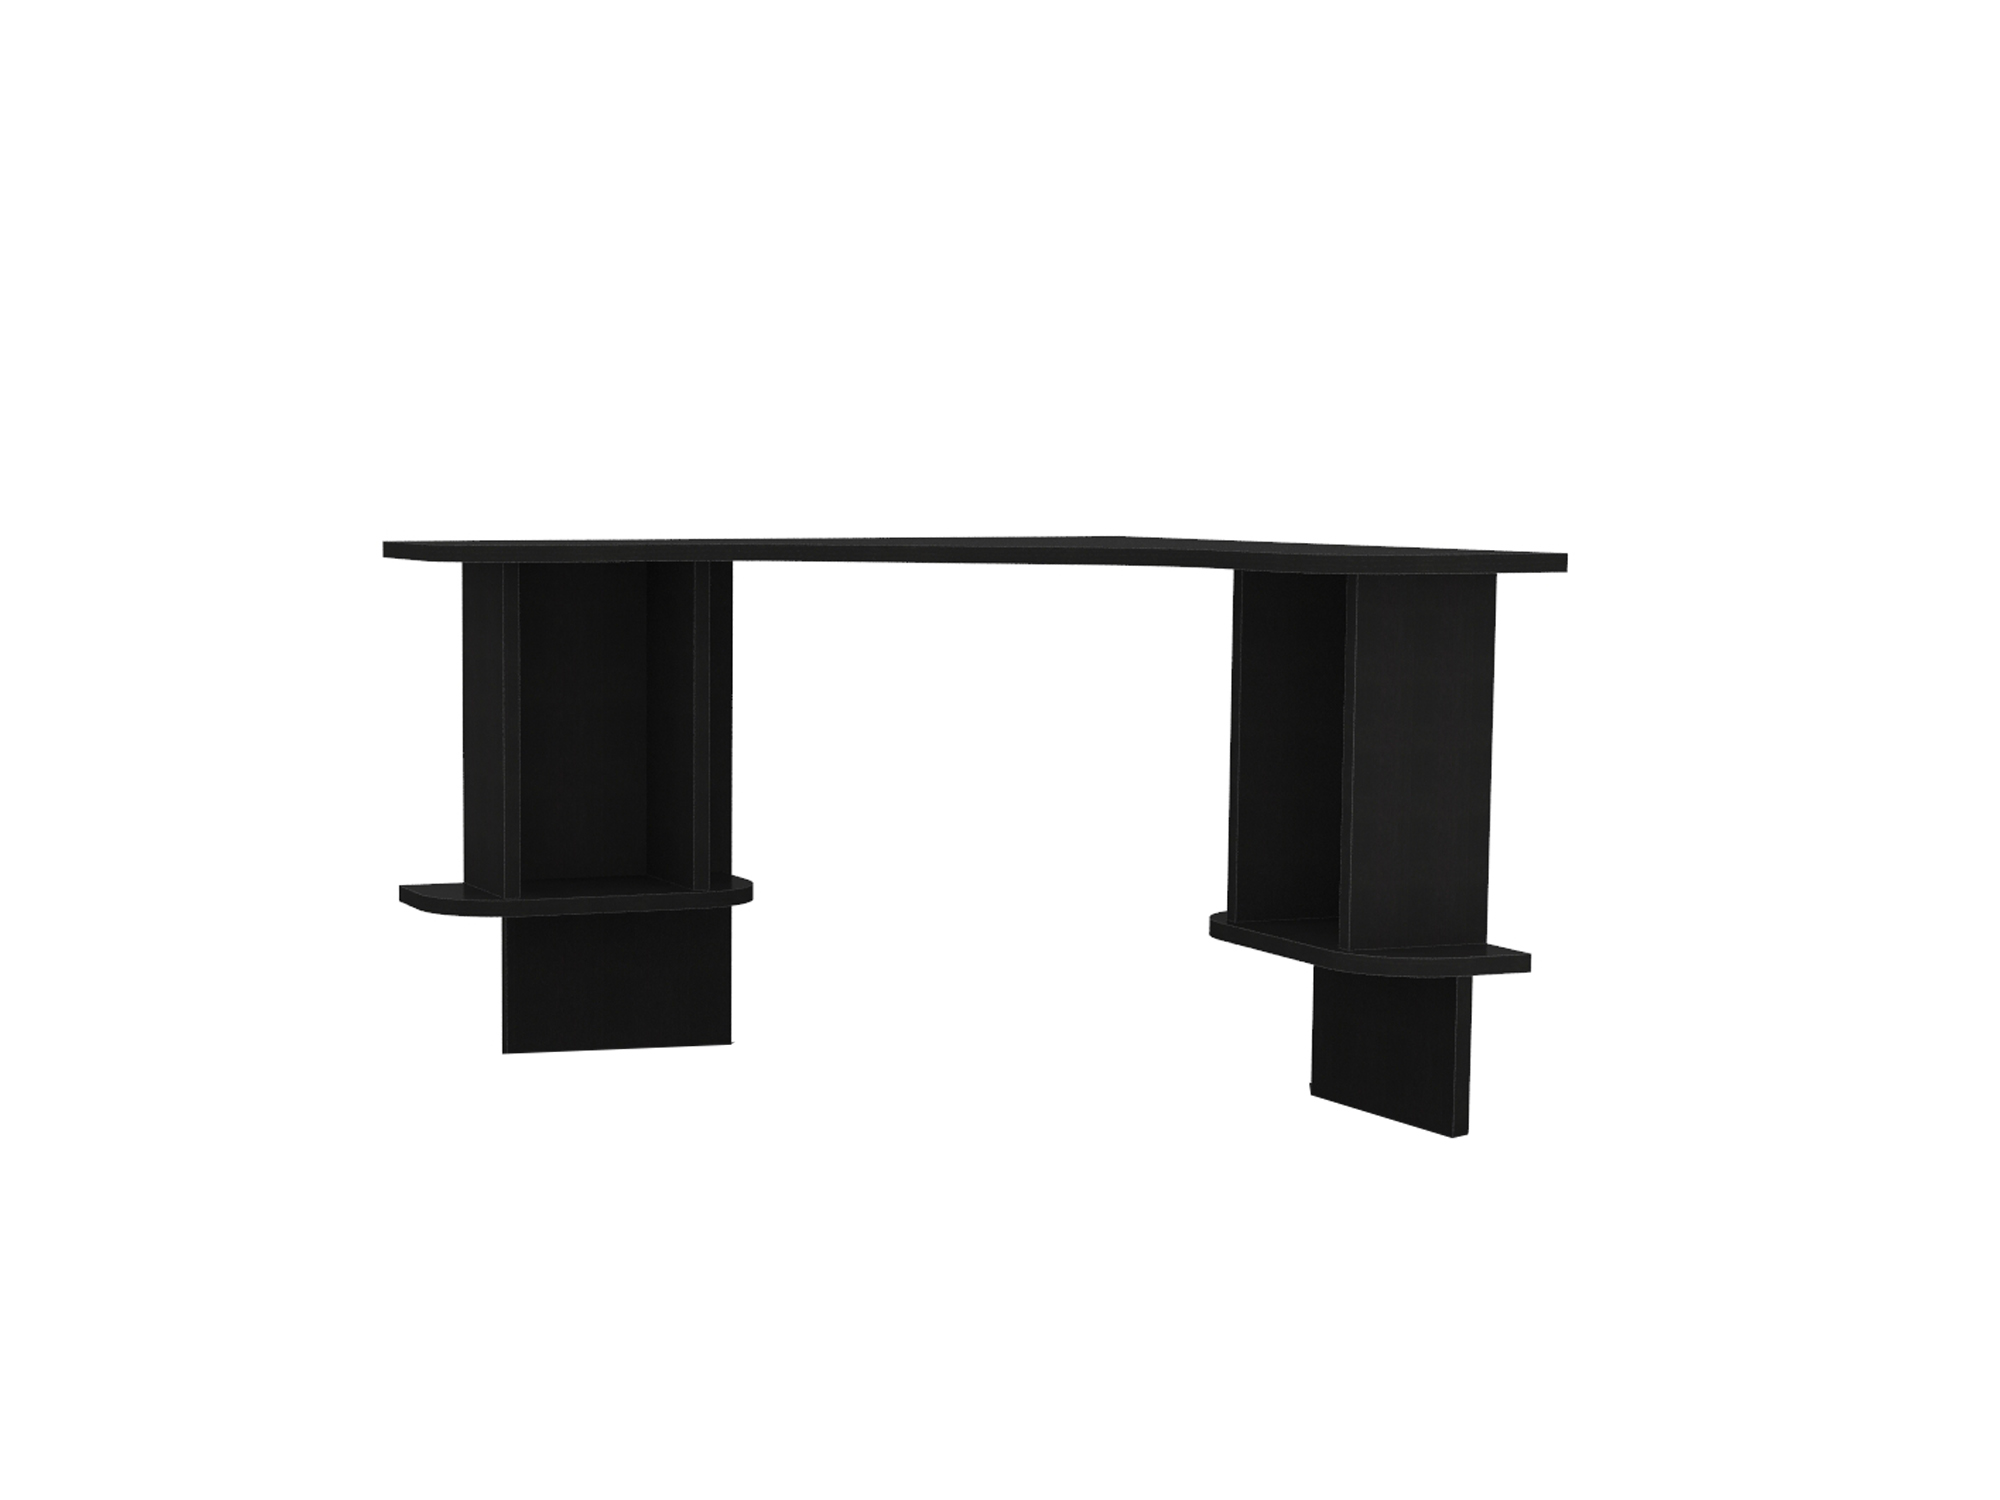 Надстройка для стола Сакс Черный, ЛДСП надстройка стола ника двойного остин м15